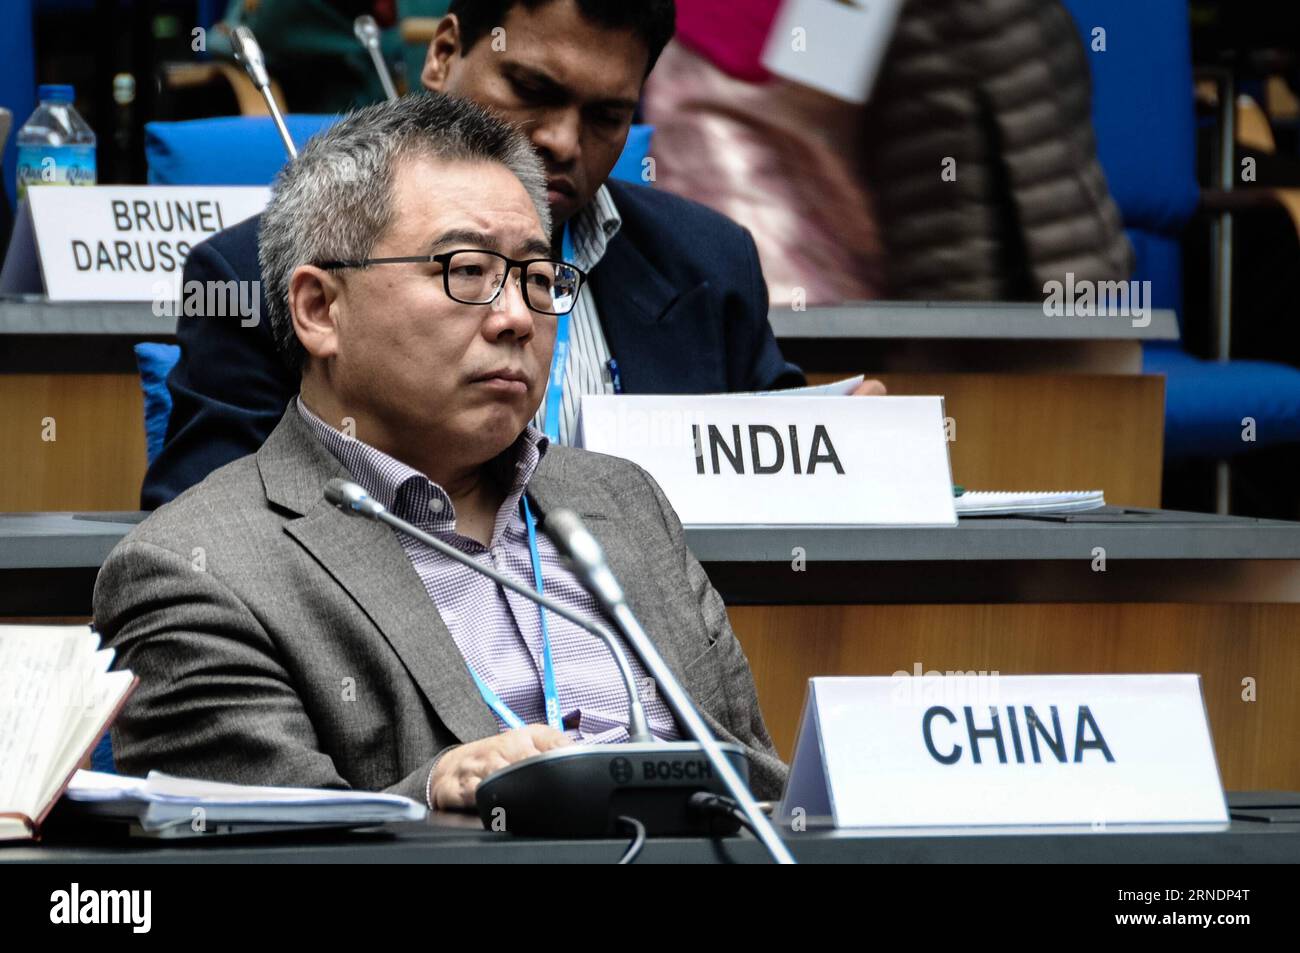 BONN, 25. Mai 2016 – Chinas Chefunterhändler Su Wei nimmt am 25. Mai 2016 in Bonn an einer zweiwöchigen Sitzung der Klimagespräche der Vereinten Nationen über die Durchführungsvorschriften des Pariser Abkommens Teil. China rechnet mit einem sehr harten Verhandlungsprozess über ein Regelwerk für das Pariser Abkommen, da es bei den Einzelheiten der Umsetzung des historischen Klimapakts zu Abweichungen kommen wird, sagte Chinas Chefunterhändler Su Wei am Mittwoch. ) (Djj) DEUTSCHLAND-BONN-UN KLIMAGESPRÄCHE TangxZhiqiang PUBLICATIONxNOTxINxCHN Bonn Mai 25 2016 China S Chief CLIMATE Negotiator SU Wei nimmt an einem Meeti Teil Stockfoto